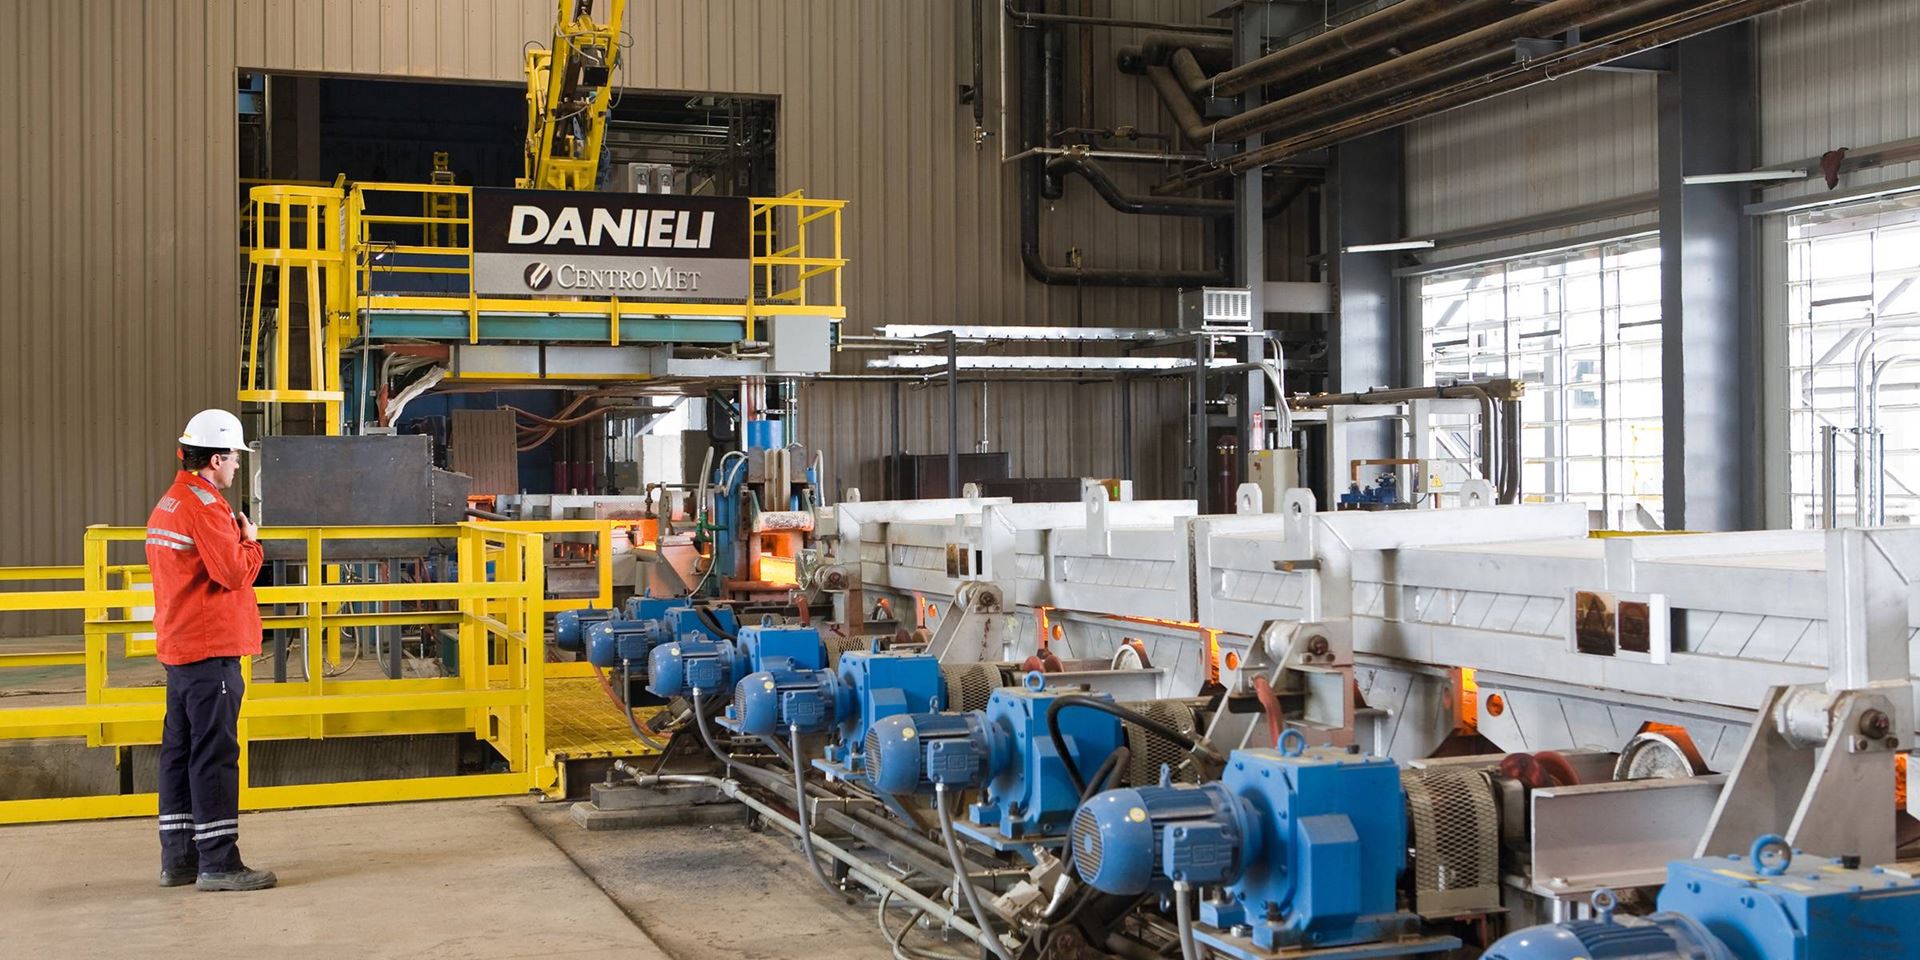 İtalyan Danieli metalürji bölümünü genişletmeyi planlıyor